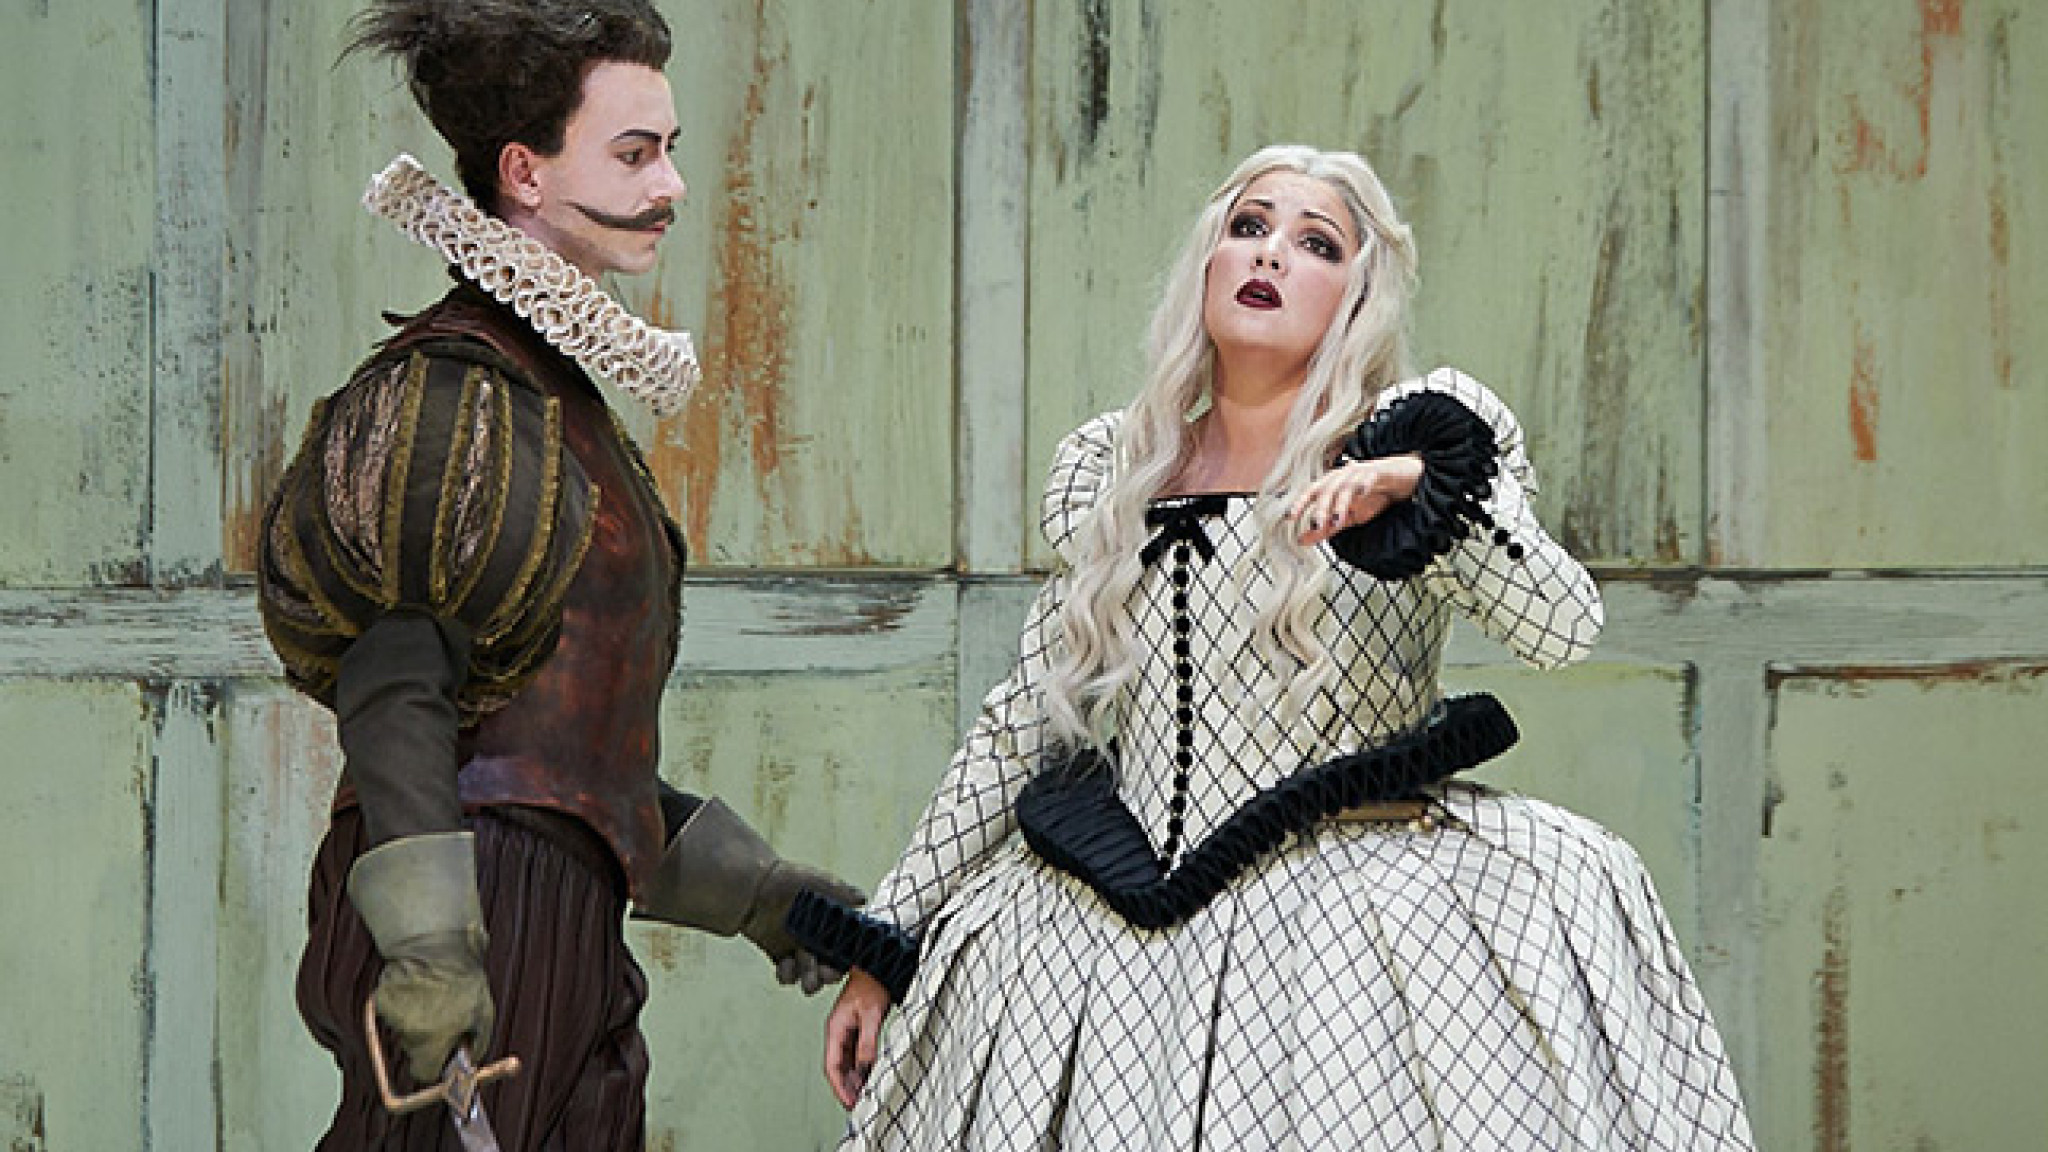 Anna im Wunderland - Neu auf DVD und Blu-ray: Anna Netrebko in Giuseppe Verdis "Il Trovatore"